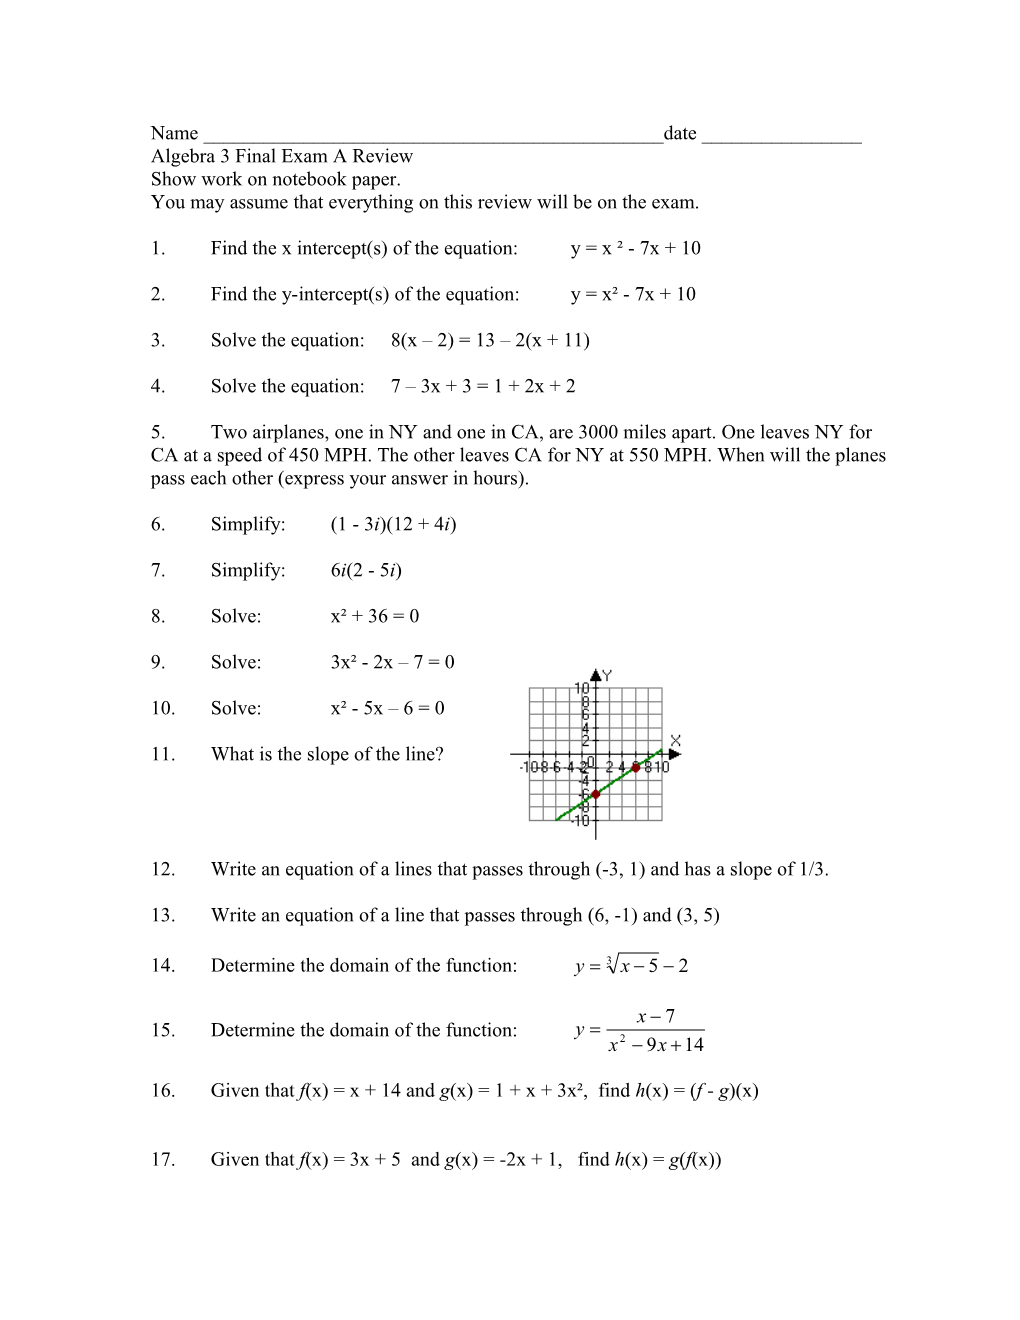 Algebra 3 Final Exam a Review